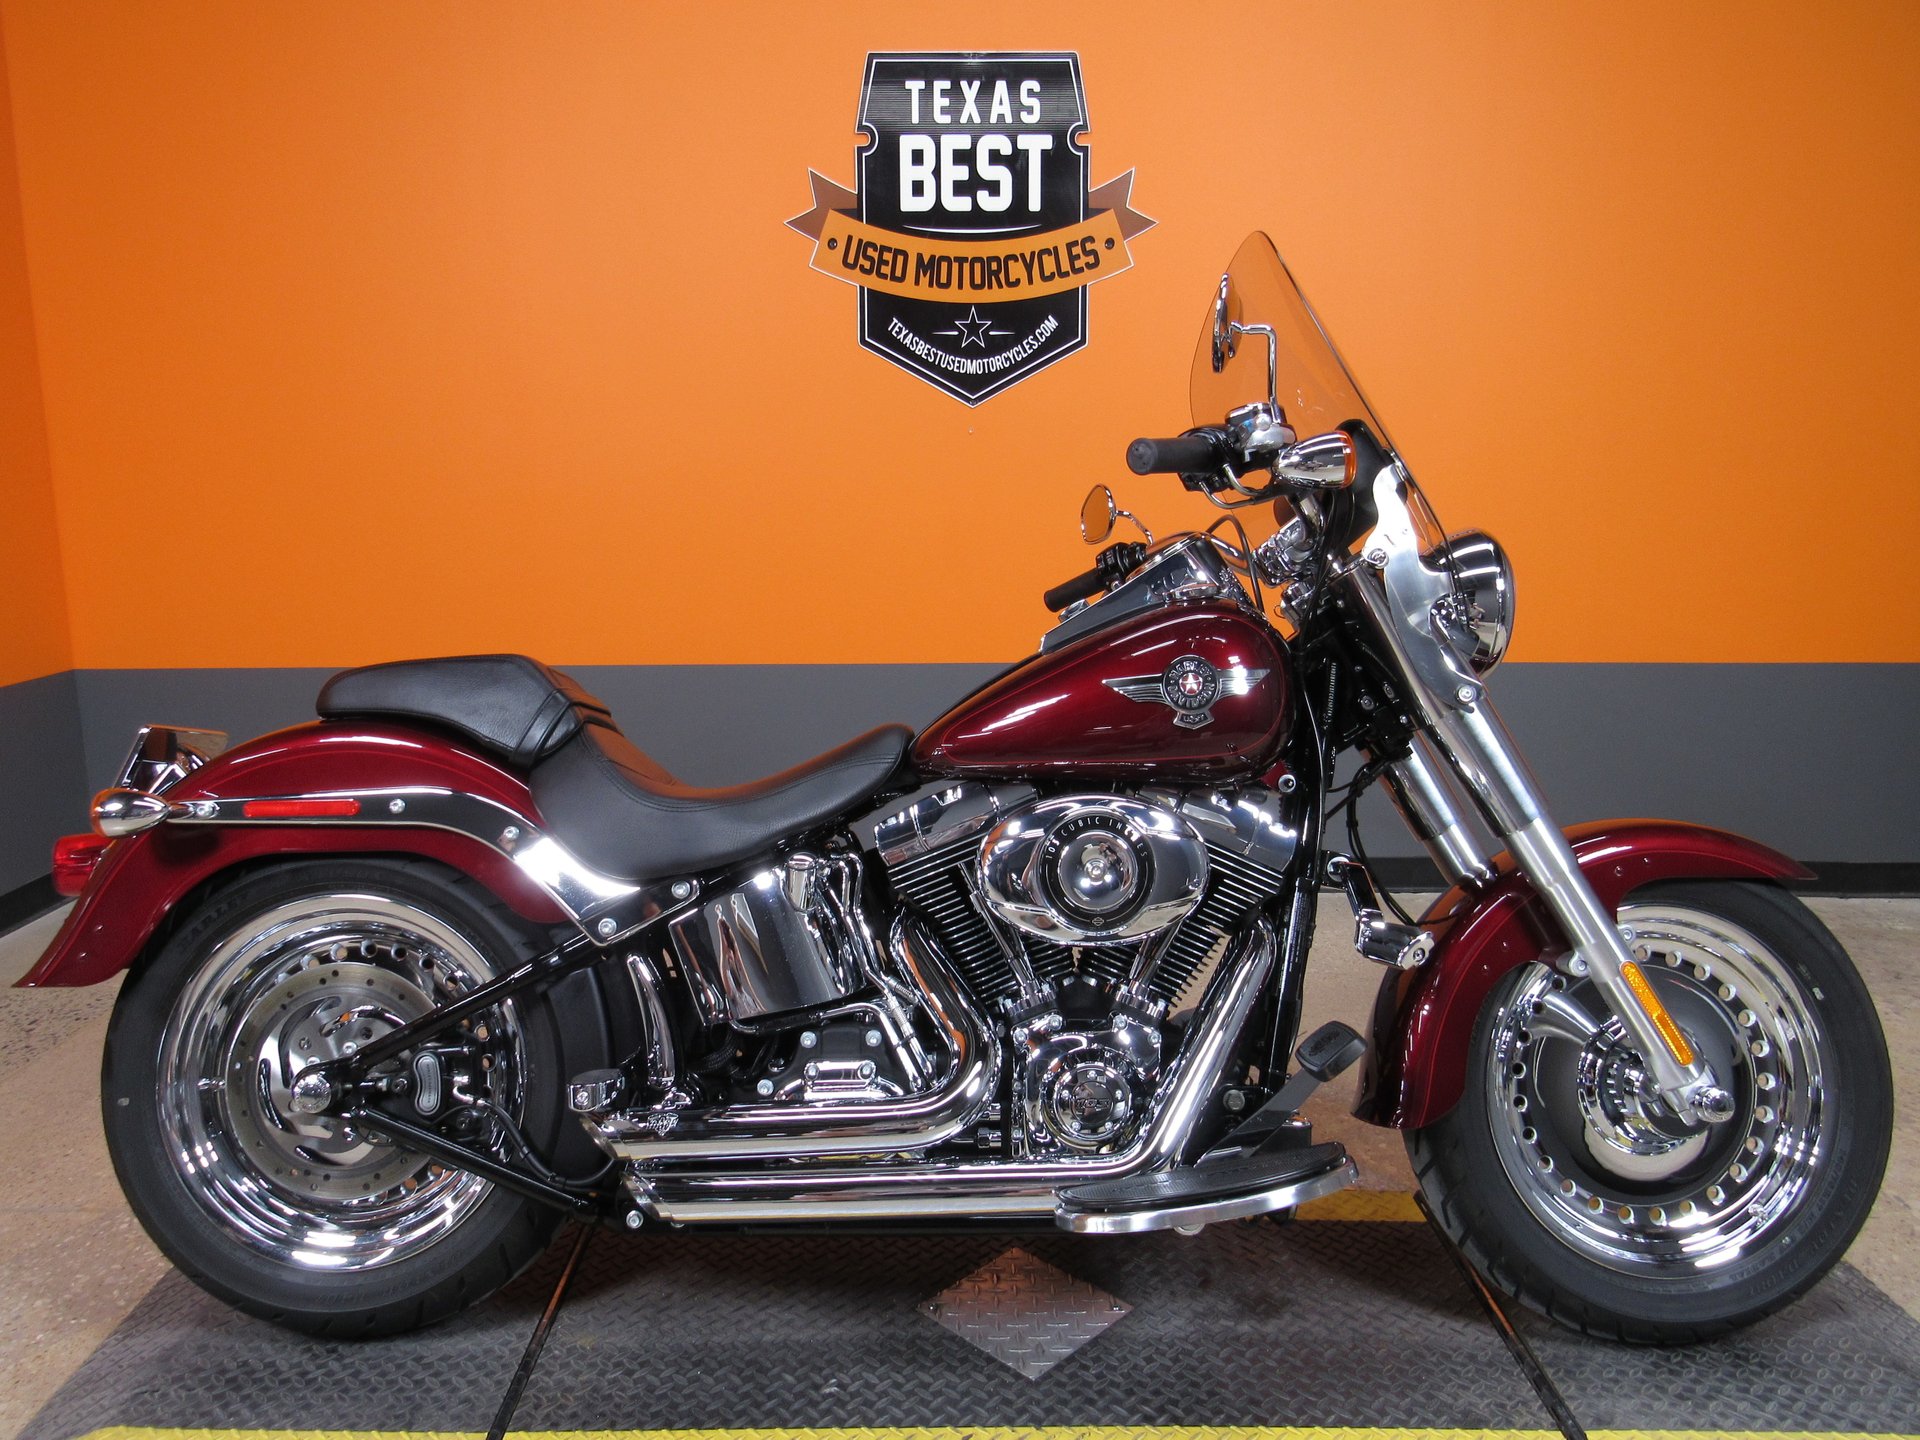 2015 Harley Davidson Fatboy For Sale Off 70 Medpharmres Com